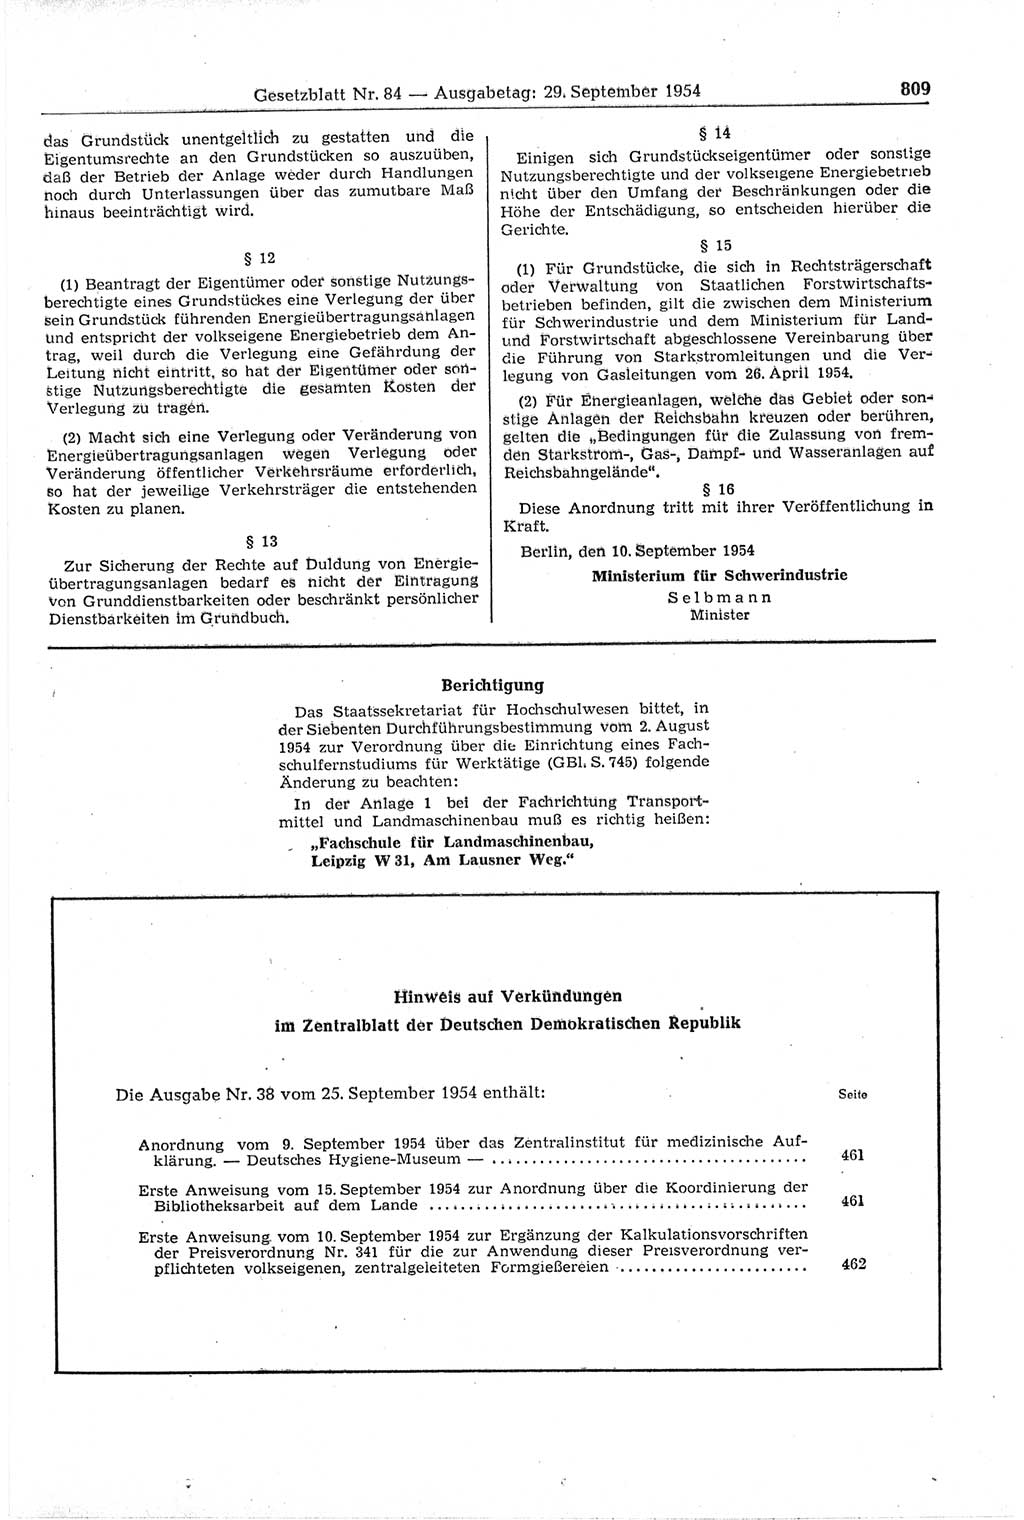 Gesetzblatt (GBl.) der Deutschen Demokratischen Republik (DDR) 1954, Seite 809 (GBl. DDR 1954, S. 809)